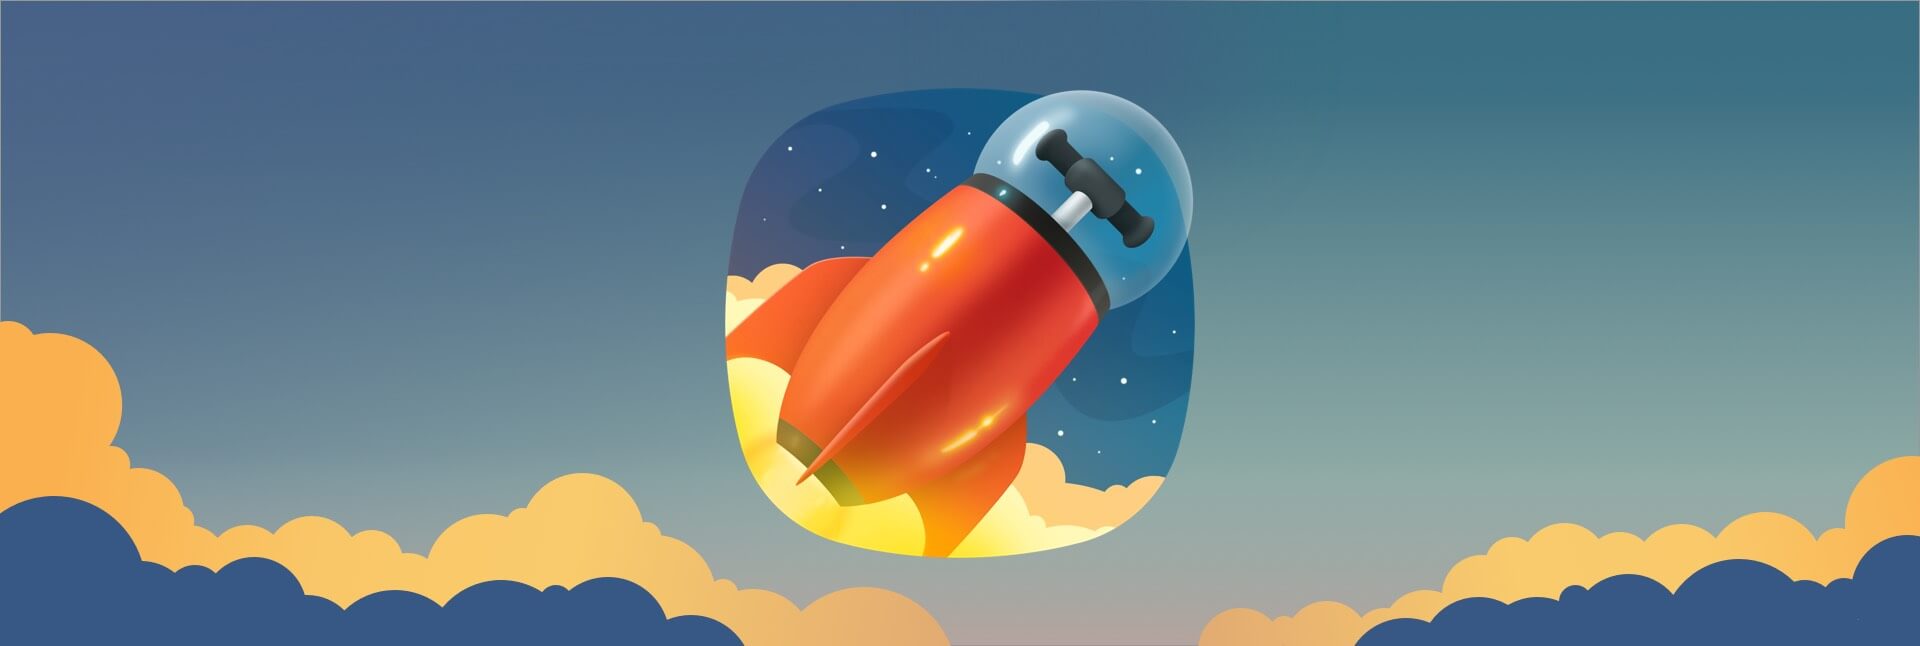 torrent mac rocket